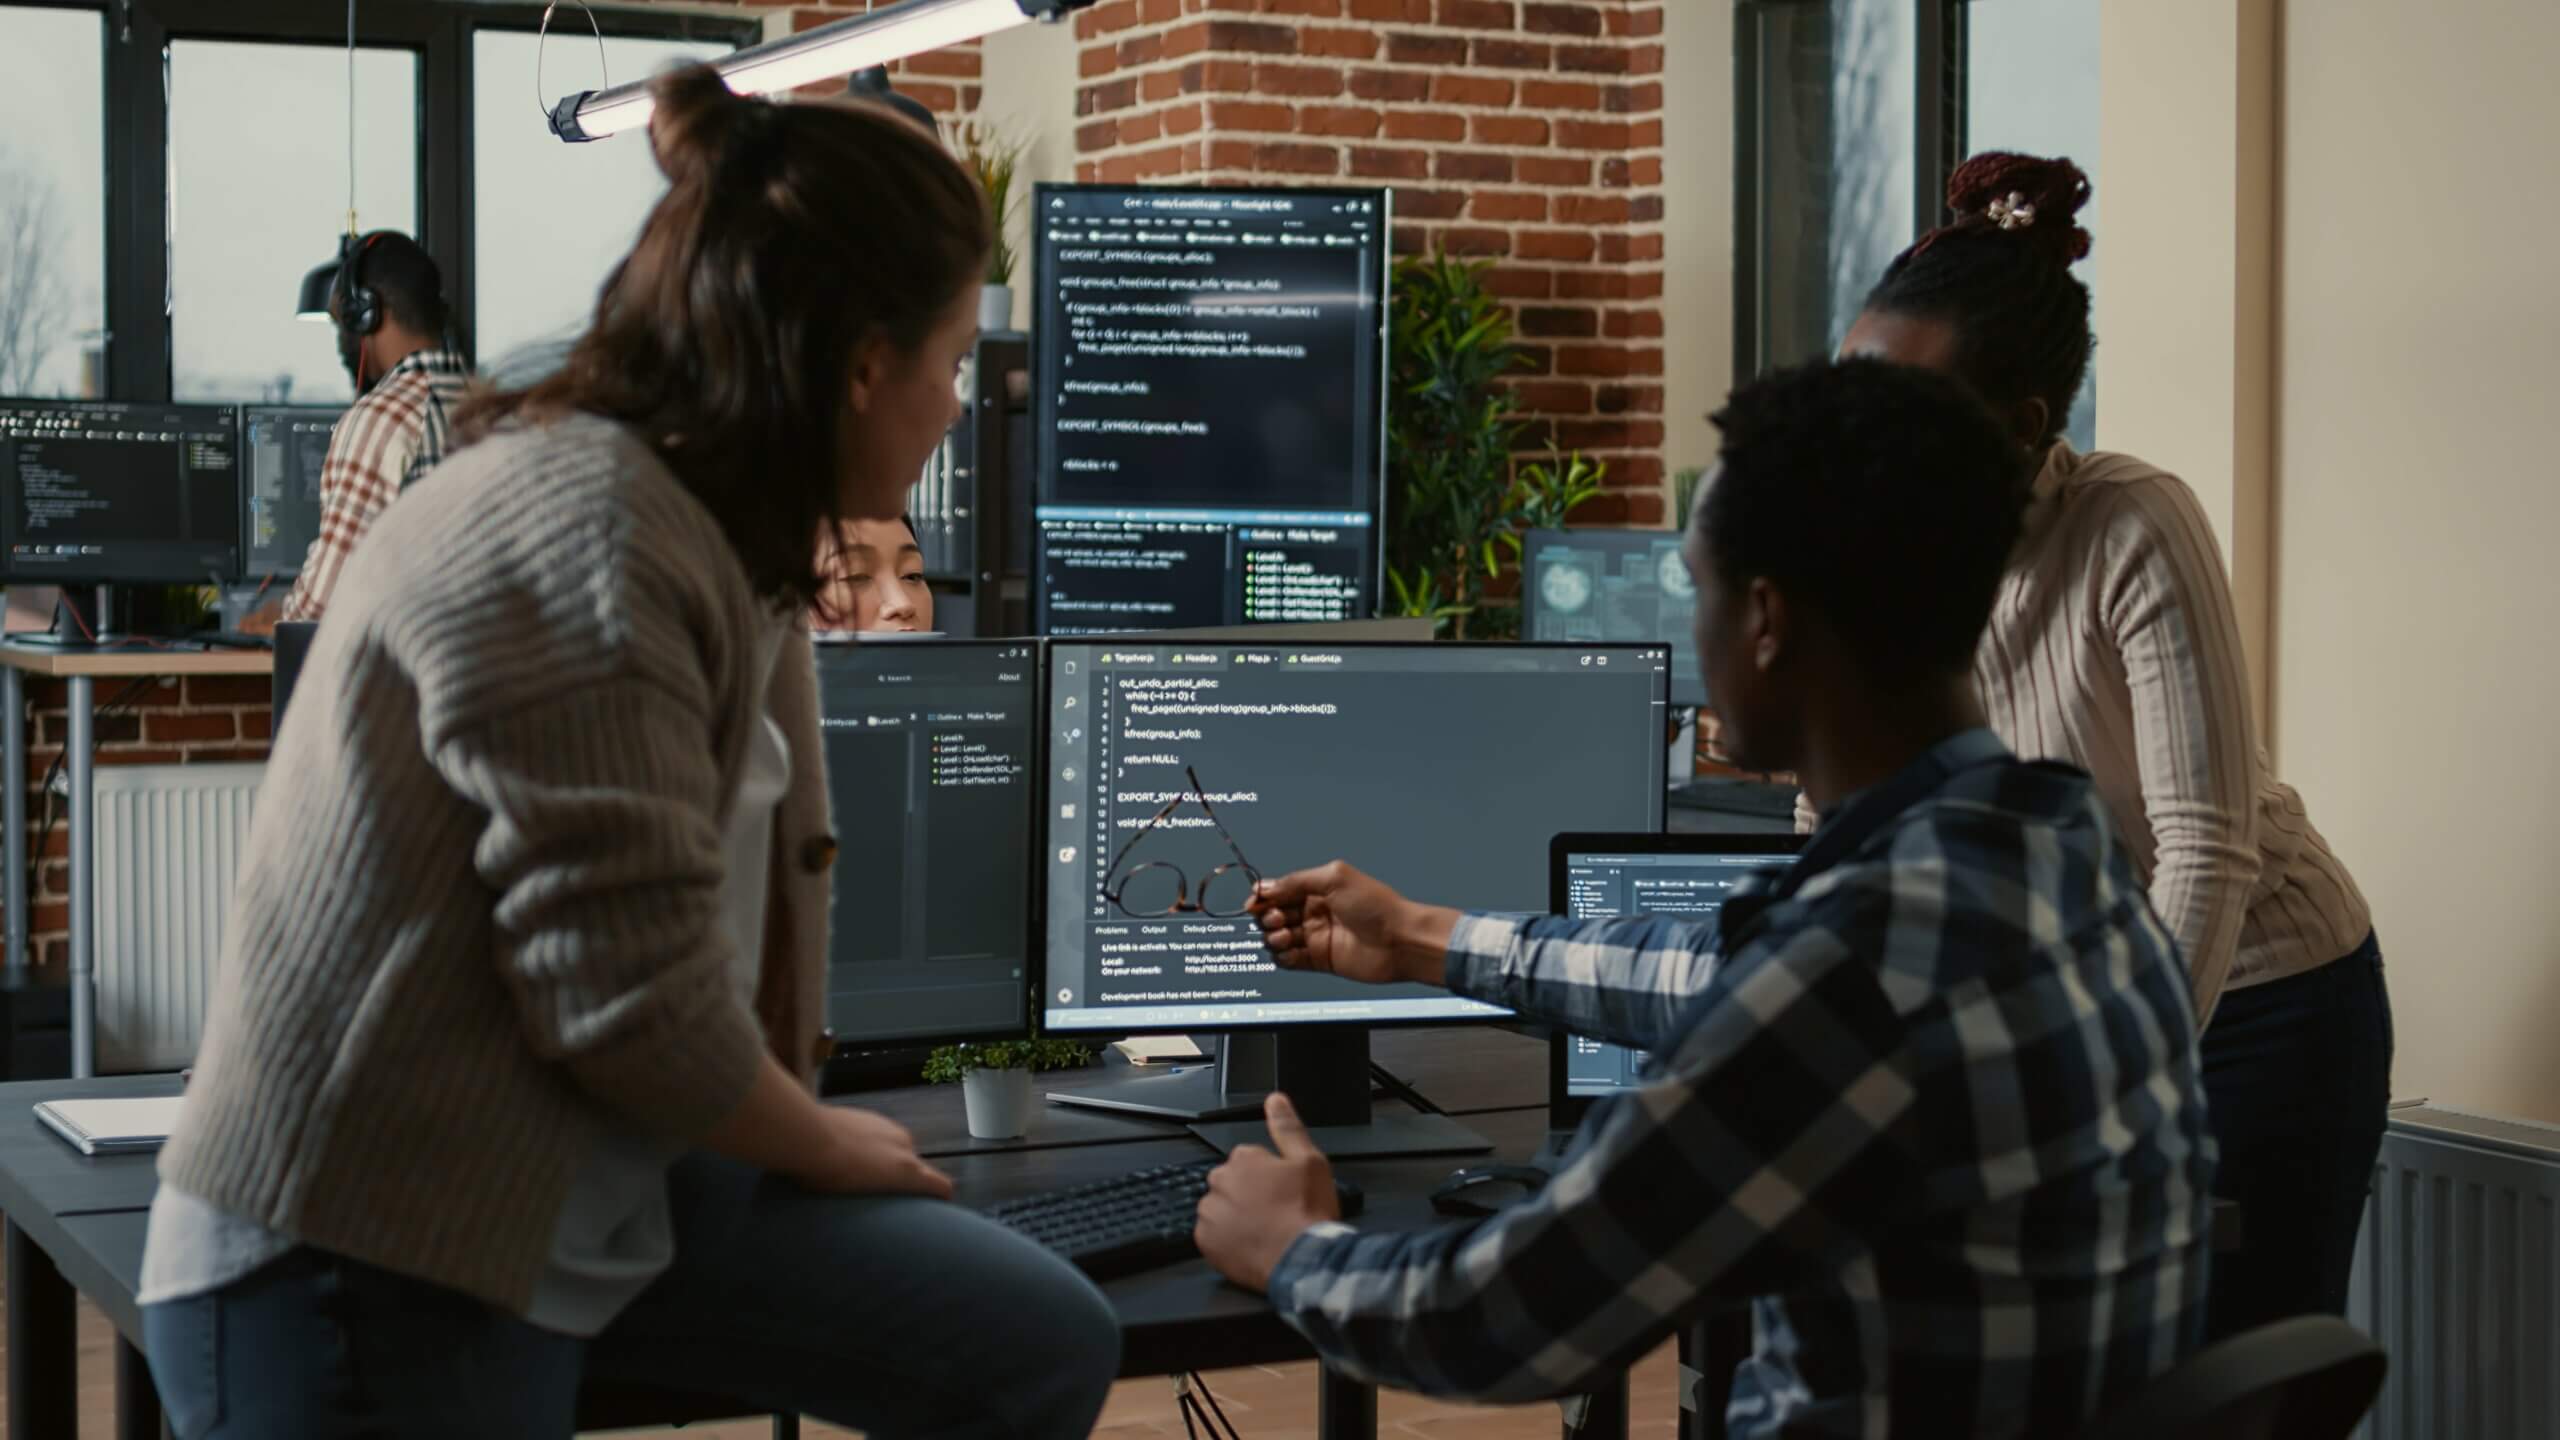 Essa imagem ilustra o conteúdo "Gerente em desenvolvimento de software: quais são as melhores características", onde pessoas programadoras estão sentadas na mesa discutindo com equipe mista de pessoas desenvolvedoras de software. Na imagem é possível ver 4 telas com código.